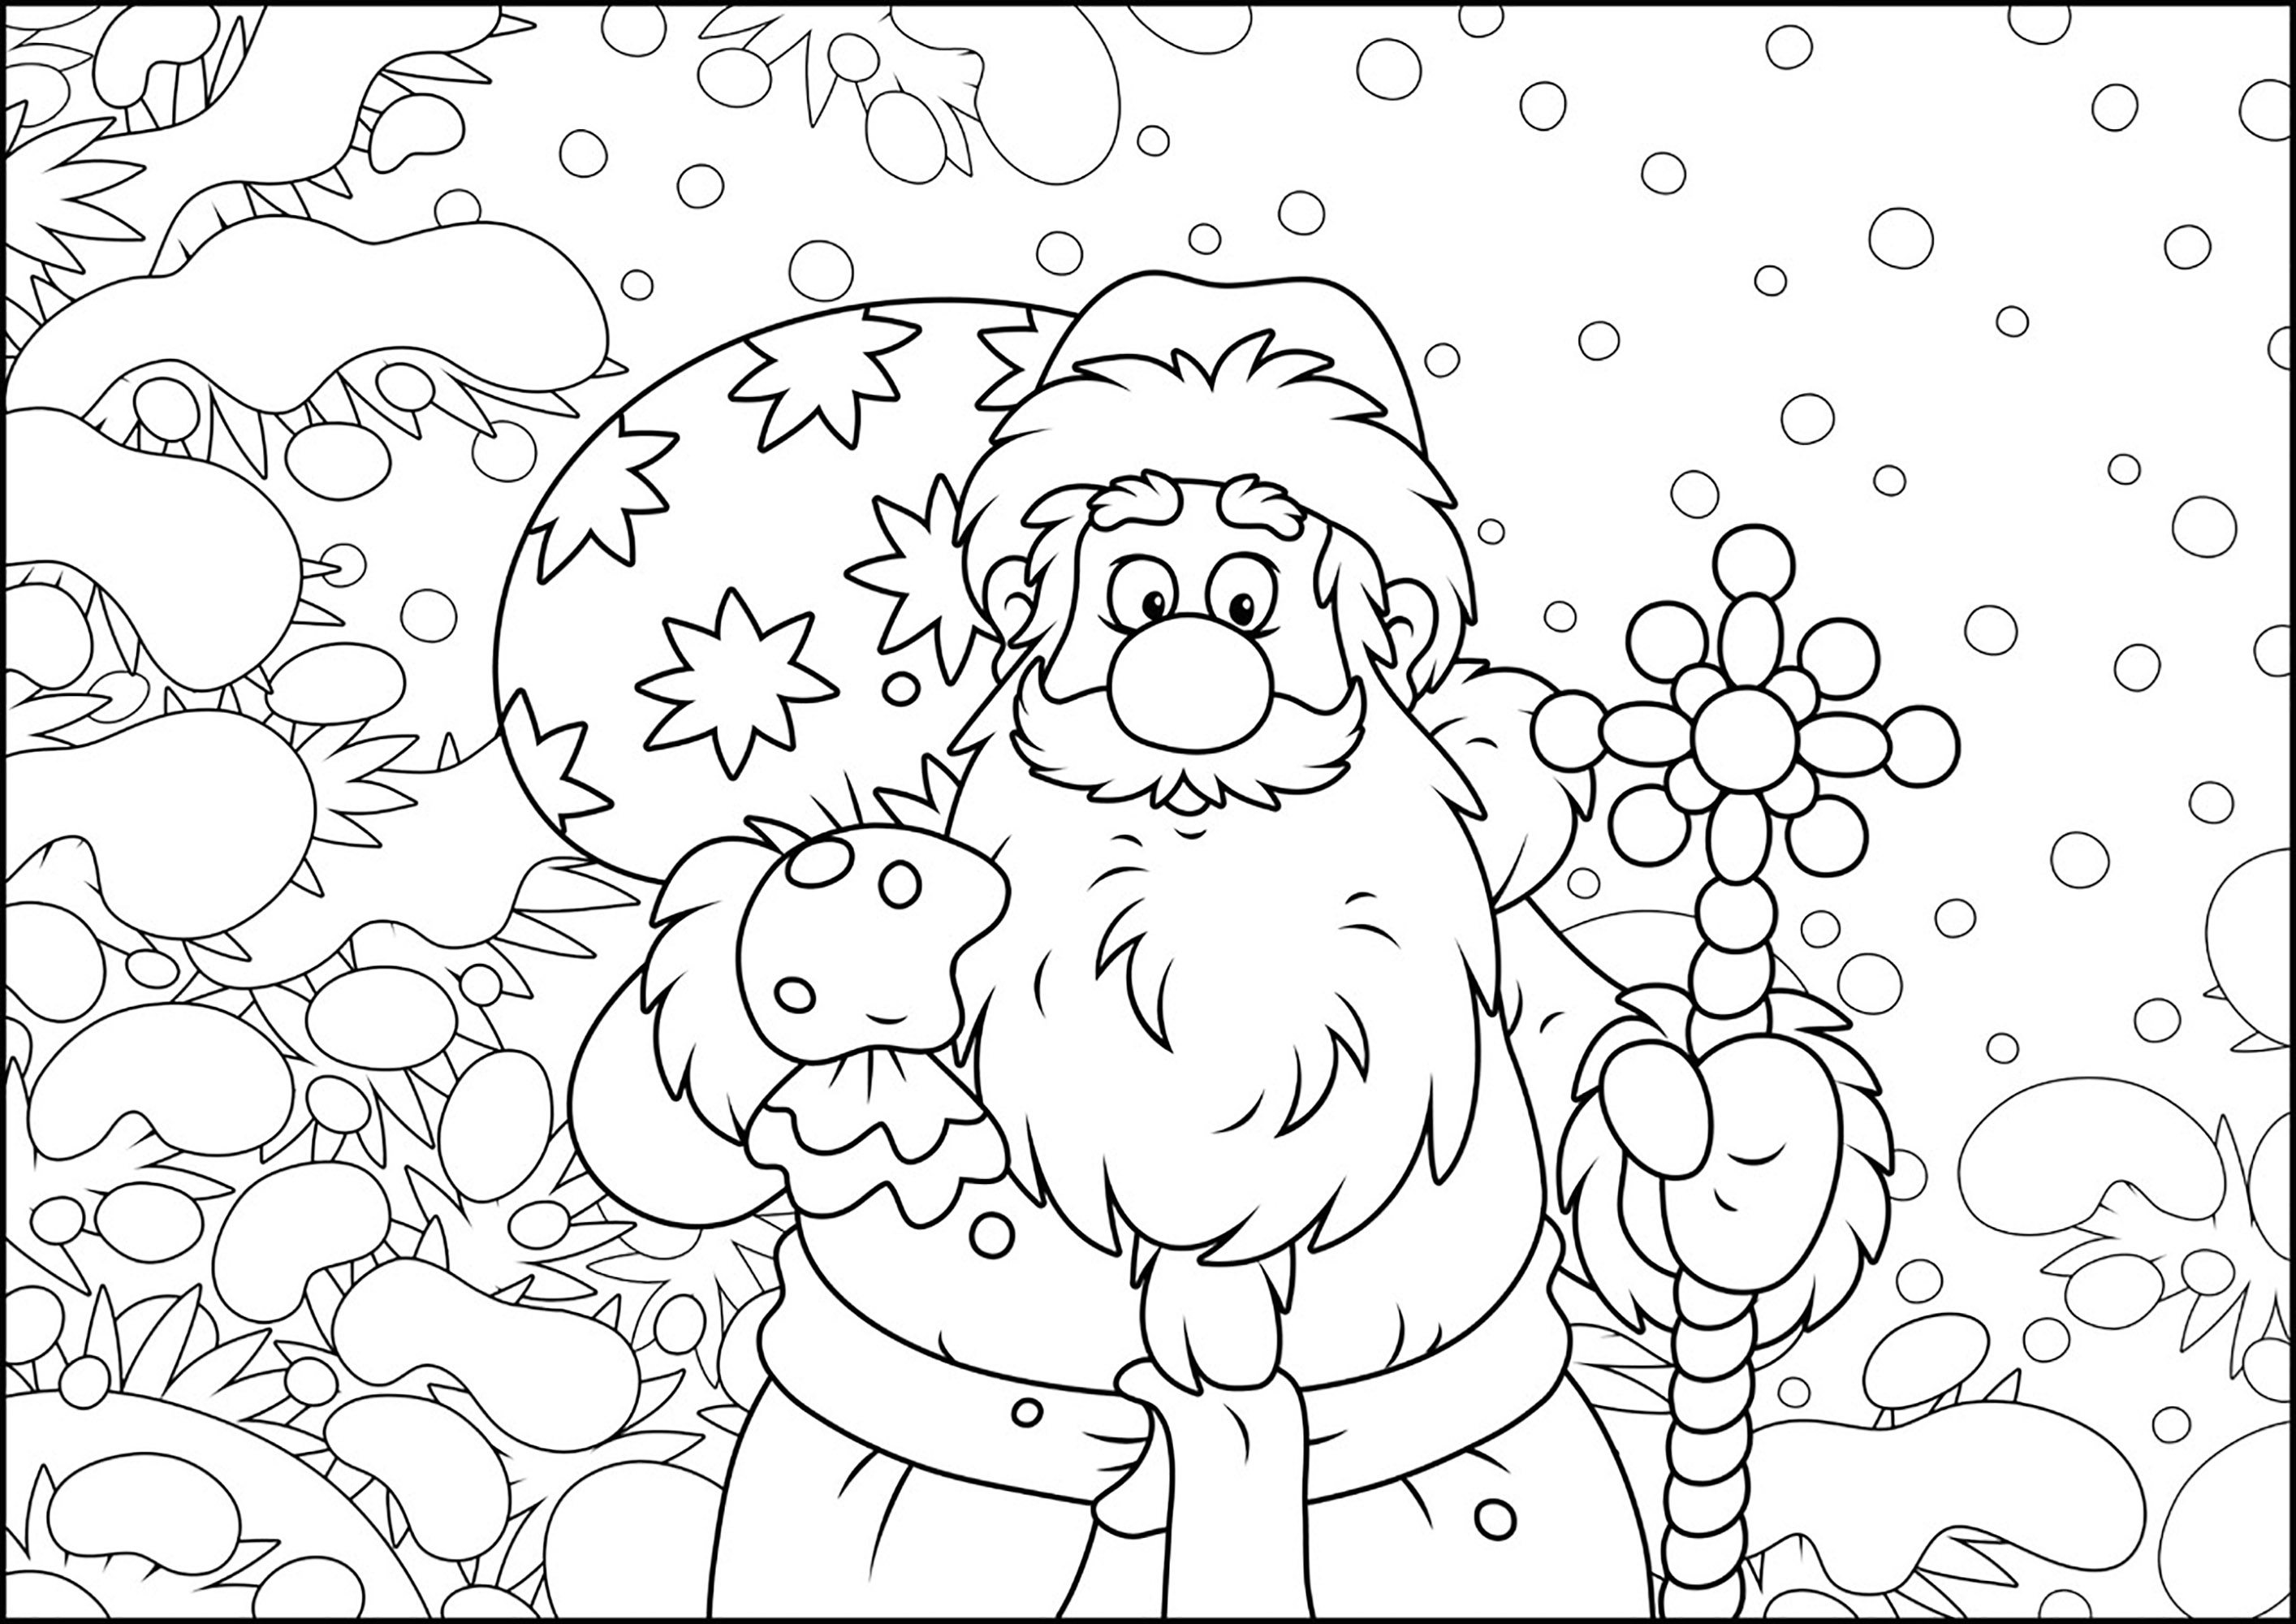 O Pai Natal em modo de desenho animado. Pinte este Pai Natal que leva presentes às crianças boas numa paisagem de neve, Fonte : 123rf   Artista : Alex. Bannykh